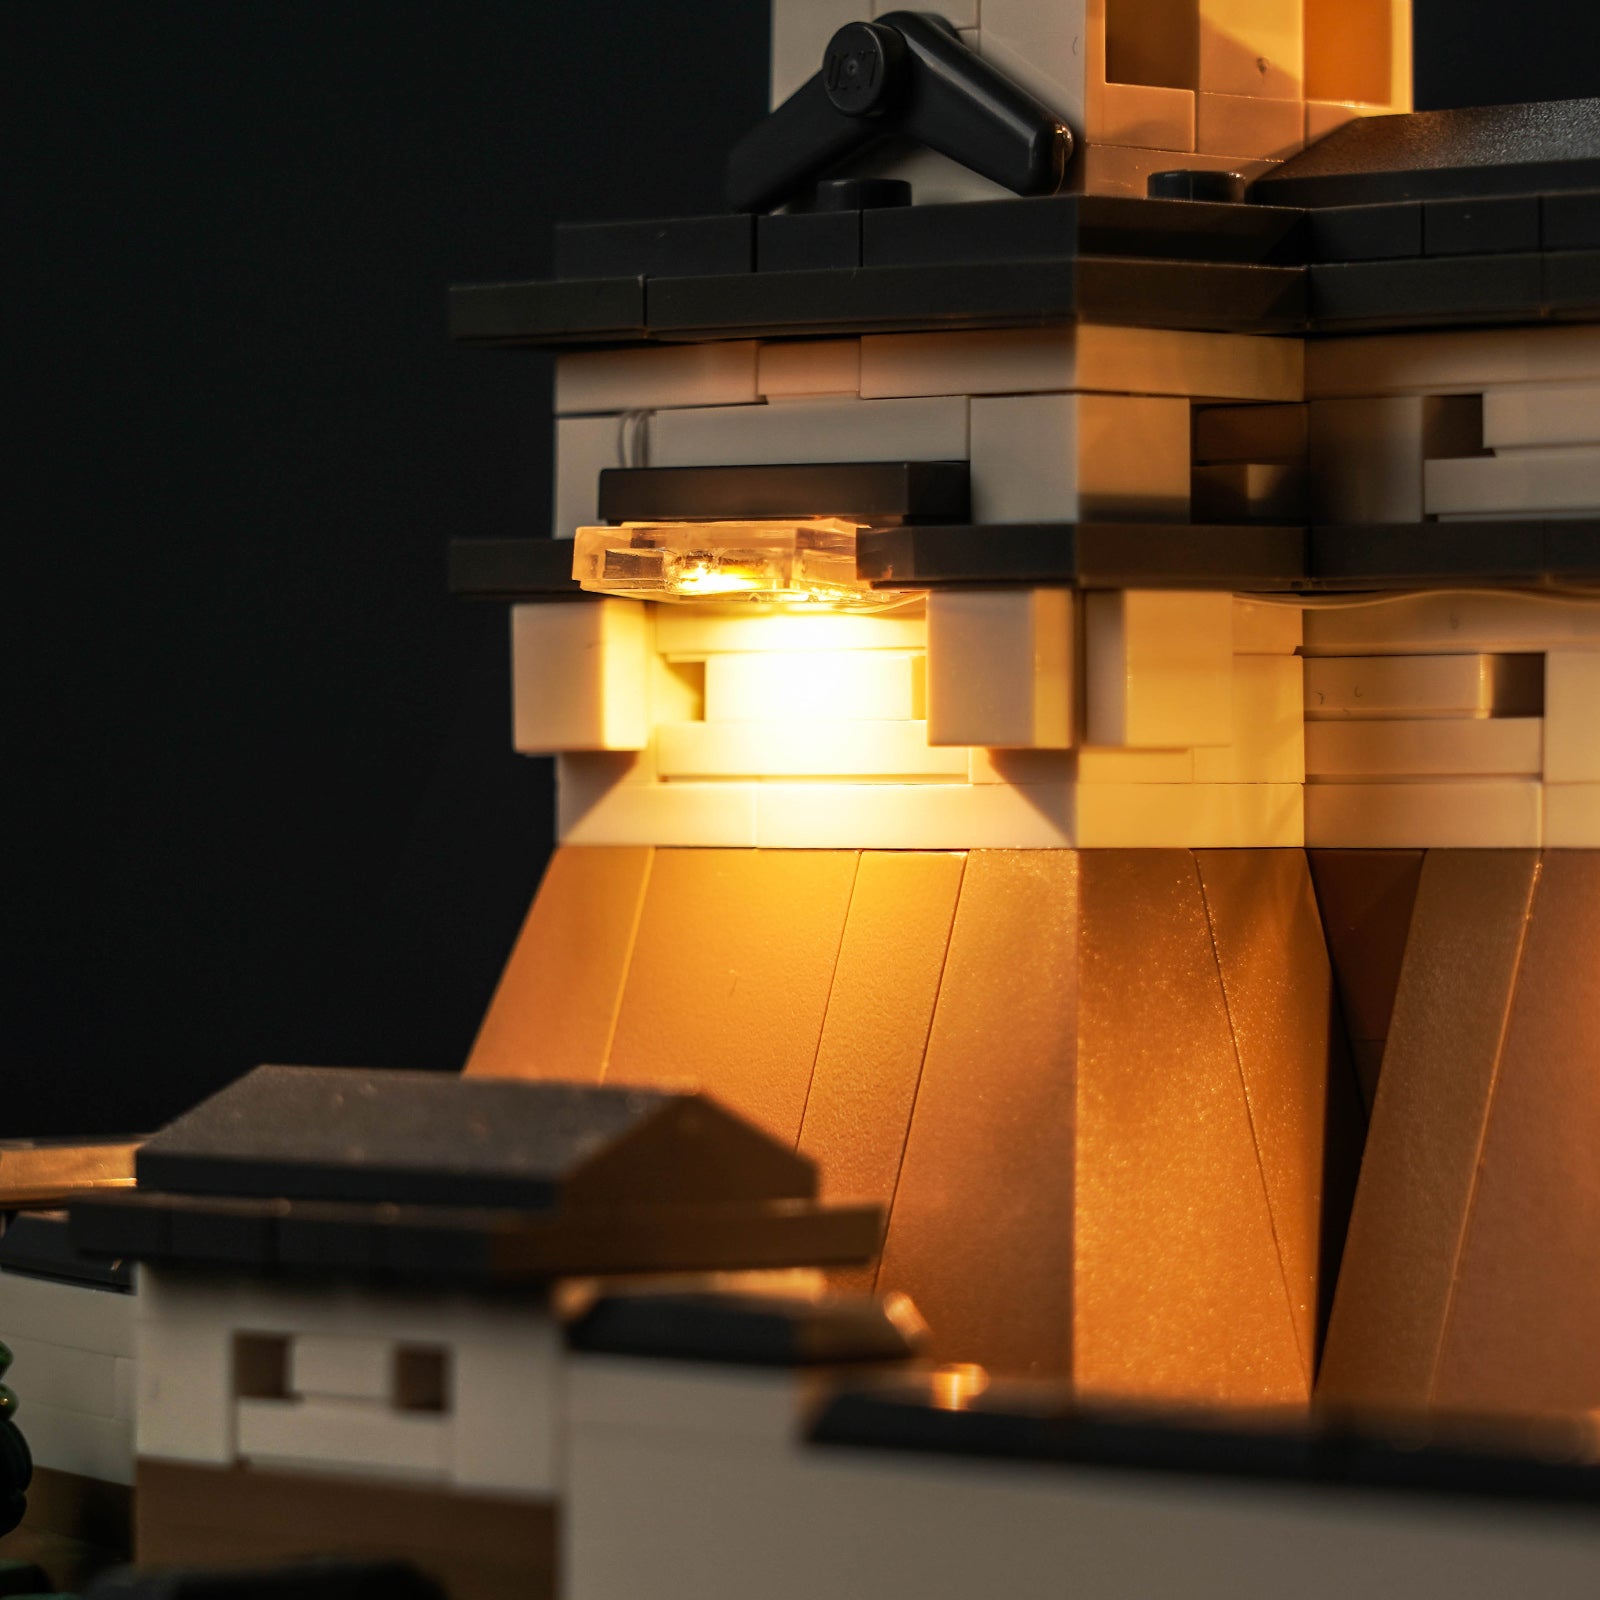 Kit d'éclairage BrickBling pour le château LEGO Himeji 21060